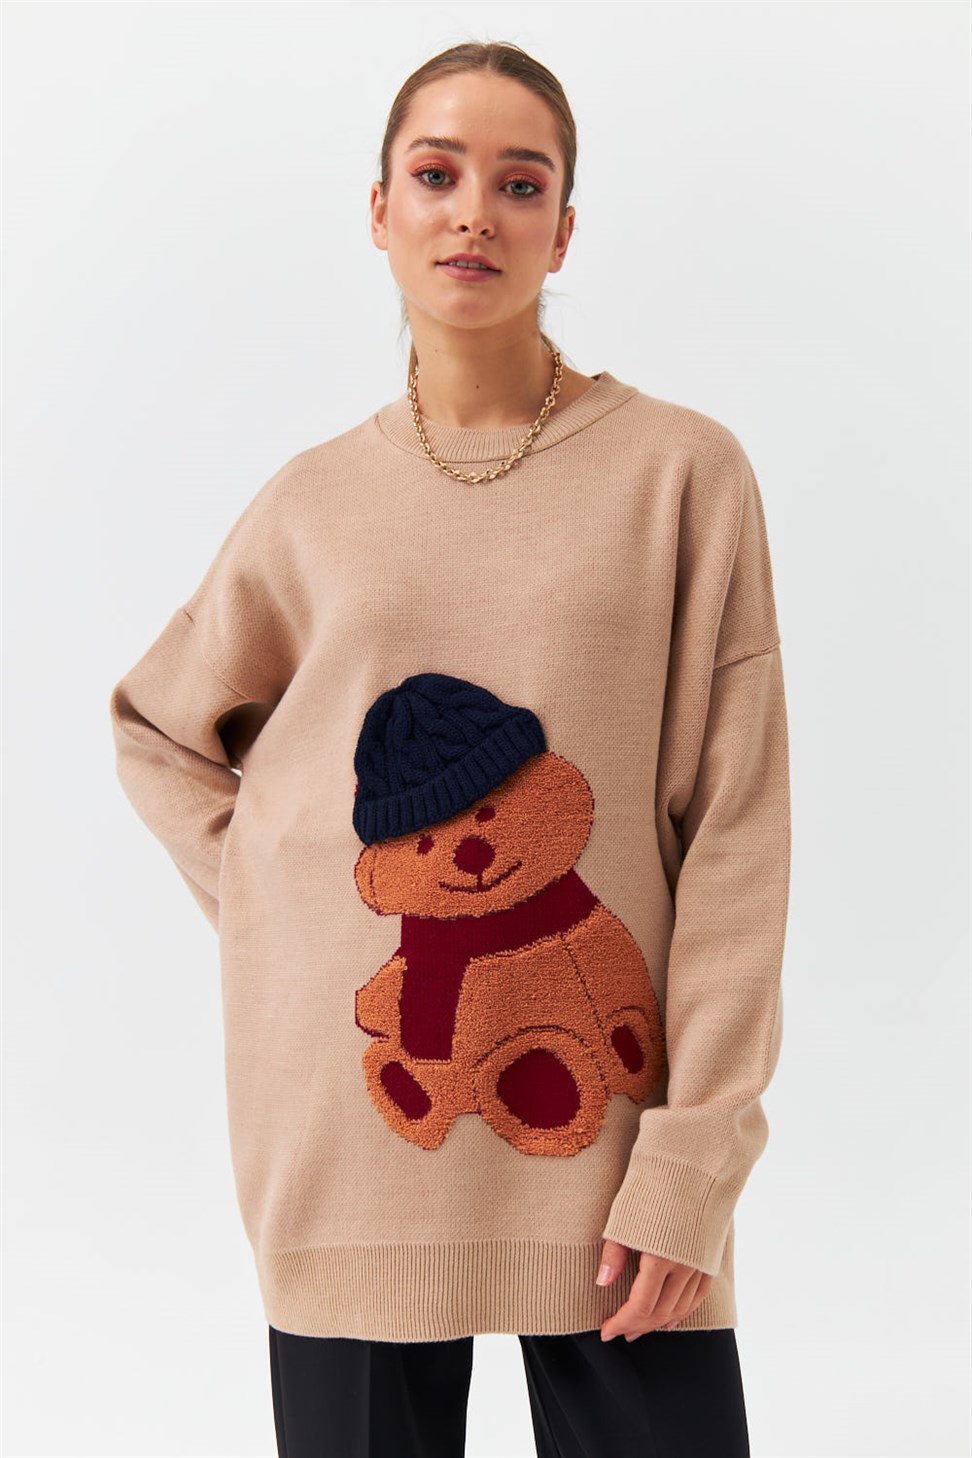 Modest Cycling Collar Patterned Knitwear Mink Women Sweater